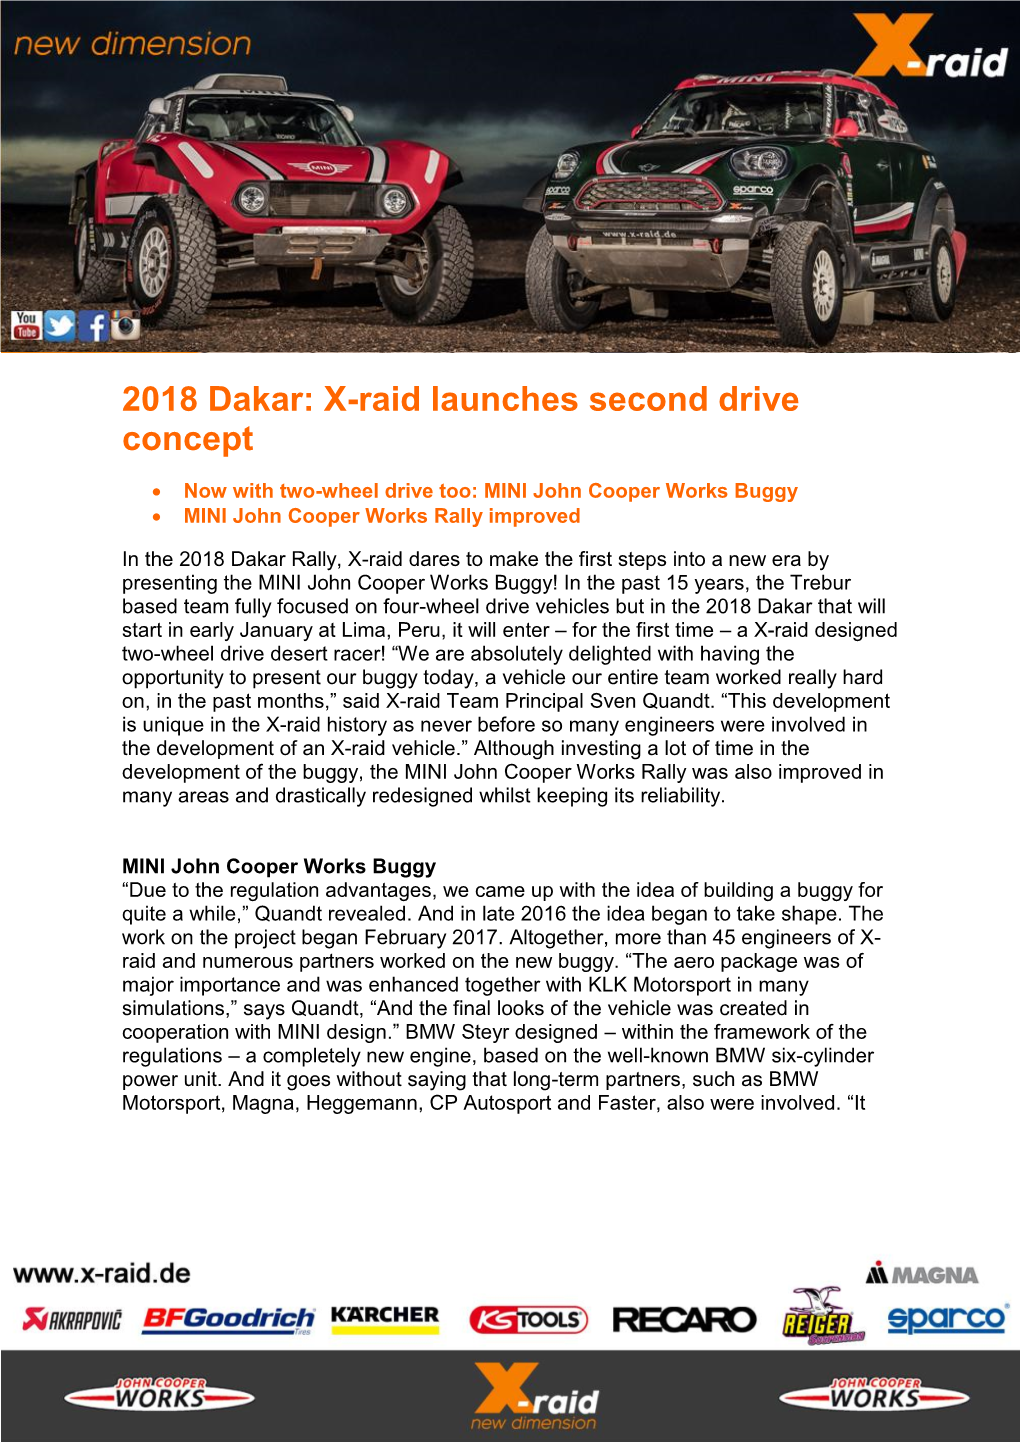 2018 Dakar: X-Raid Launches Second Drive Concept